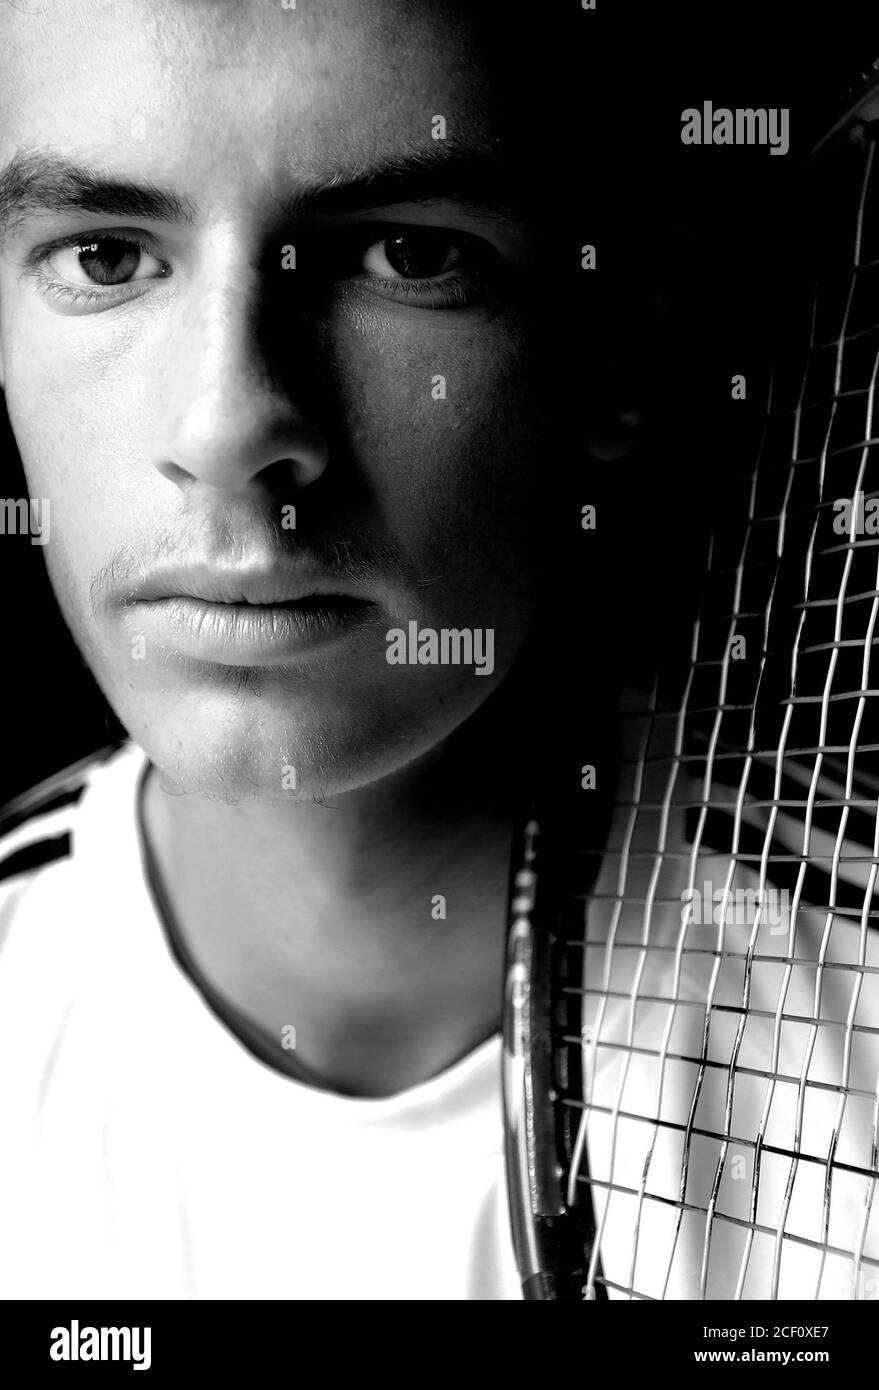 Uno de los mejores jugadores de tenis del mundo en sólo 16, Andy Murray nació el 15 de mayo de 1987 visto aquí con mamá Judy pics tomado en 2004 por Alan Peebles Foto de stock